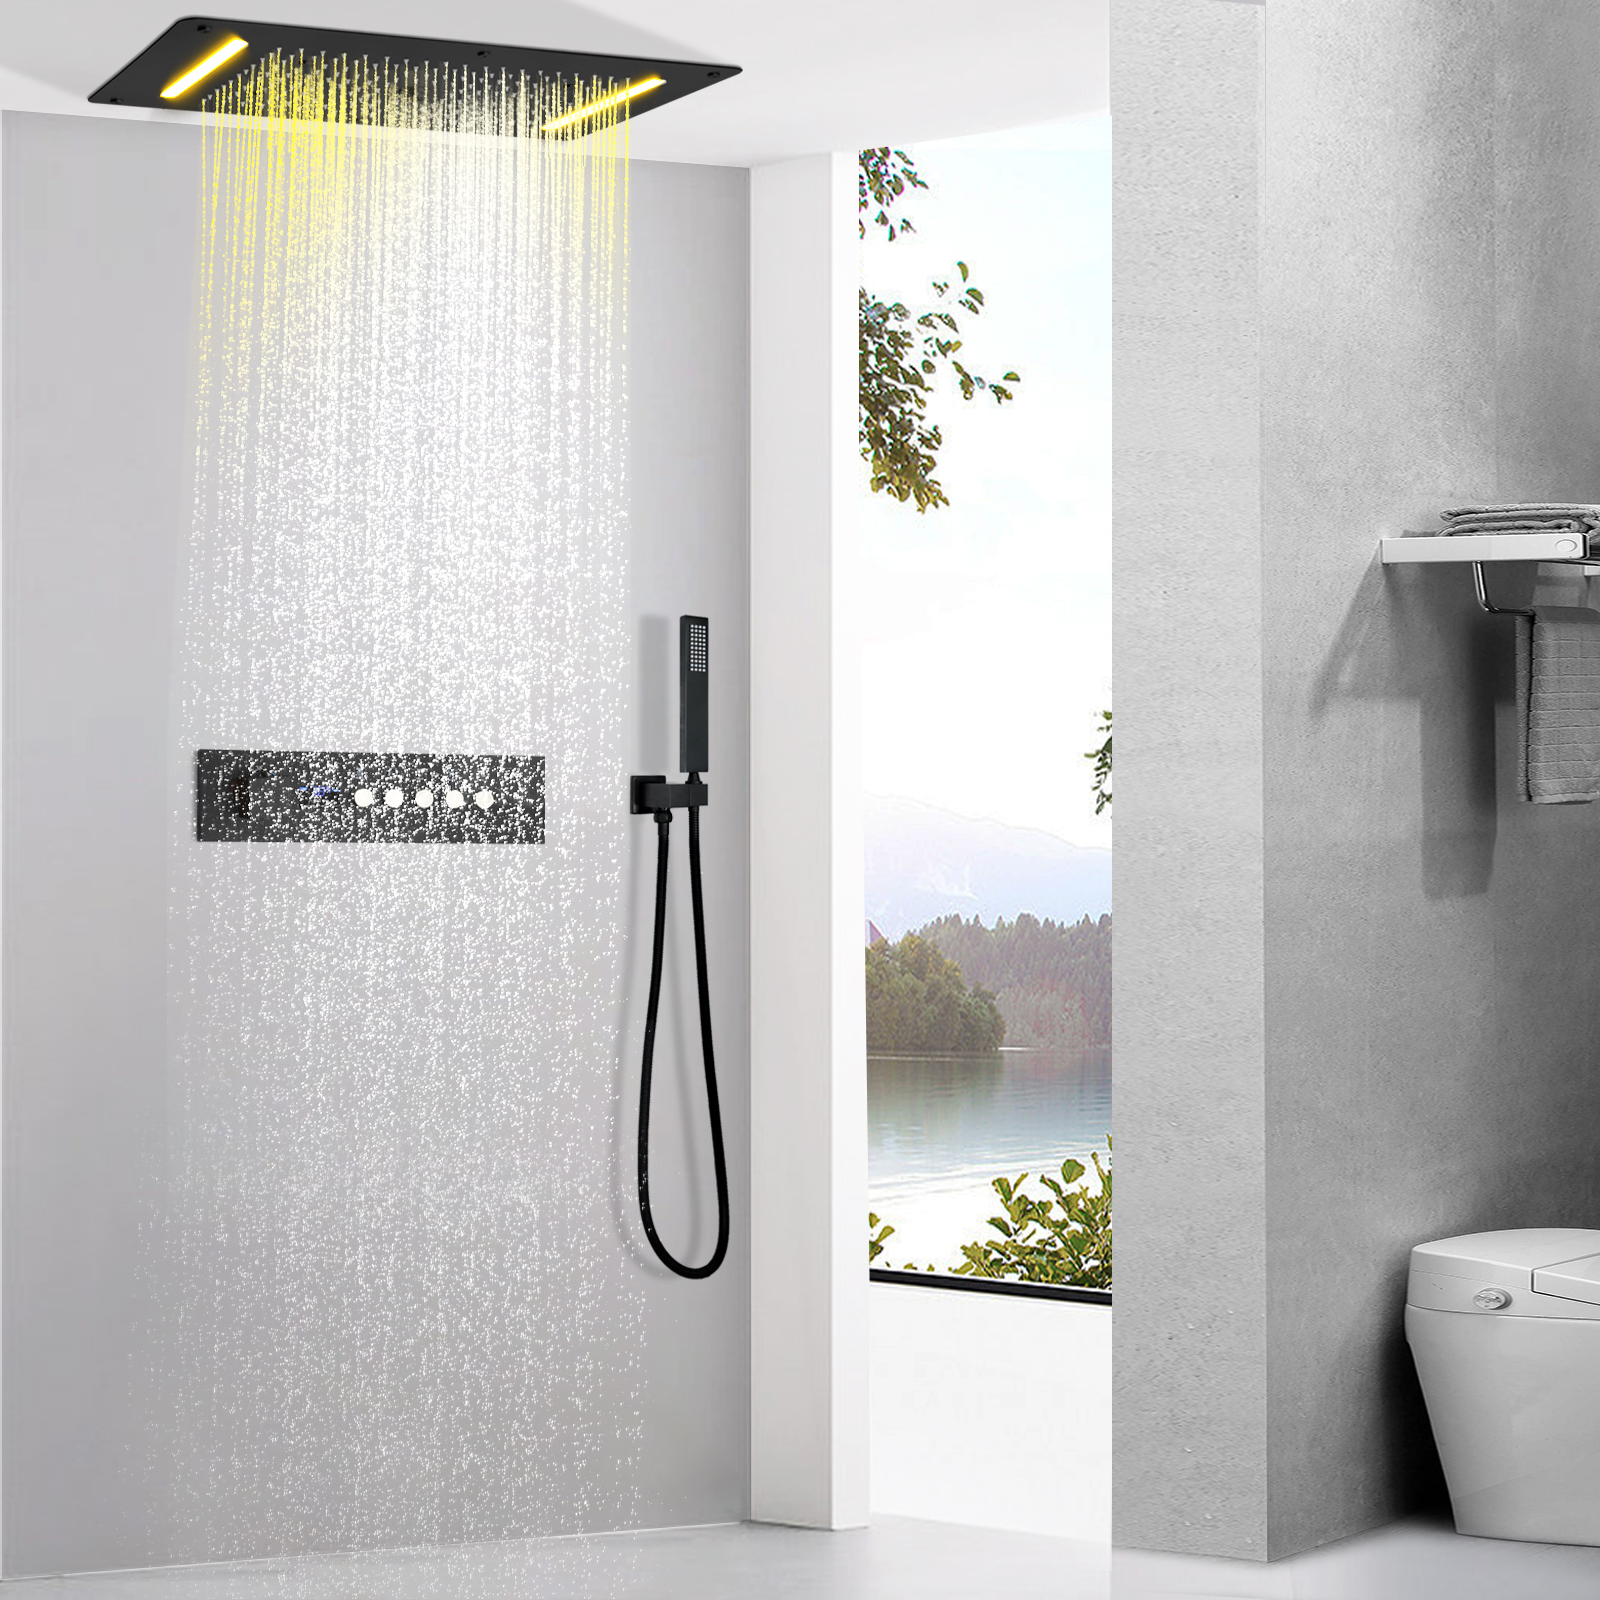 Sistema de chuveiro cascata escuro fosco, sistema de chuveiro com display digital de led, válvula termostática, chuveiro de spa, conjunto de torneira